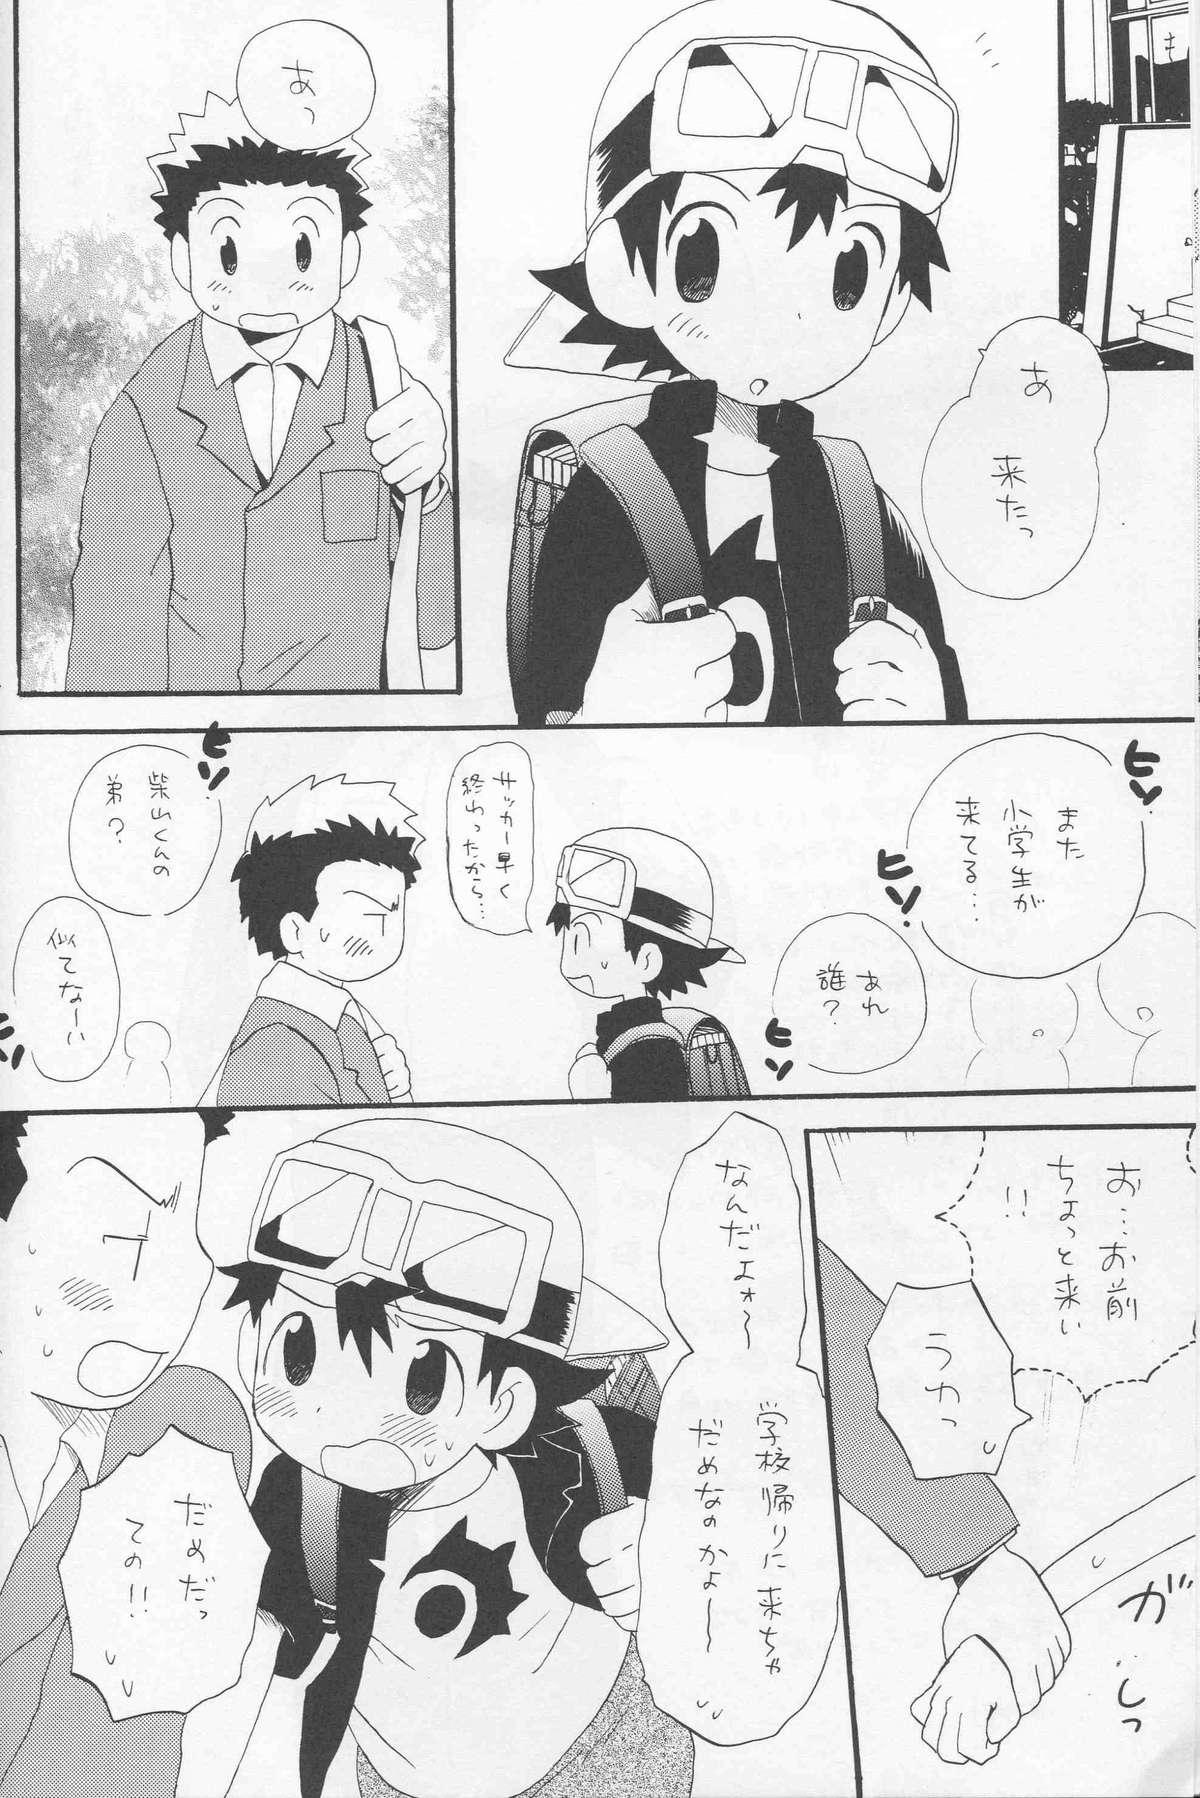 Blow Job Contest JTH - Digimon frontier Nerd - Page 11